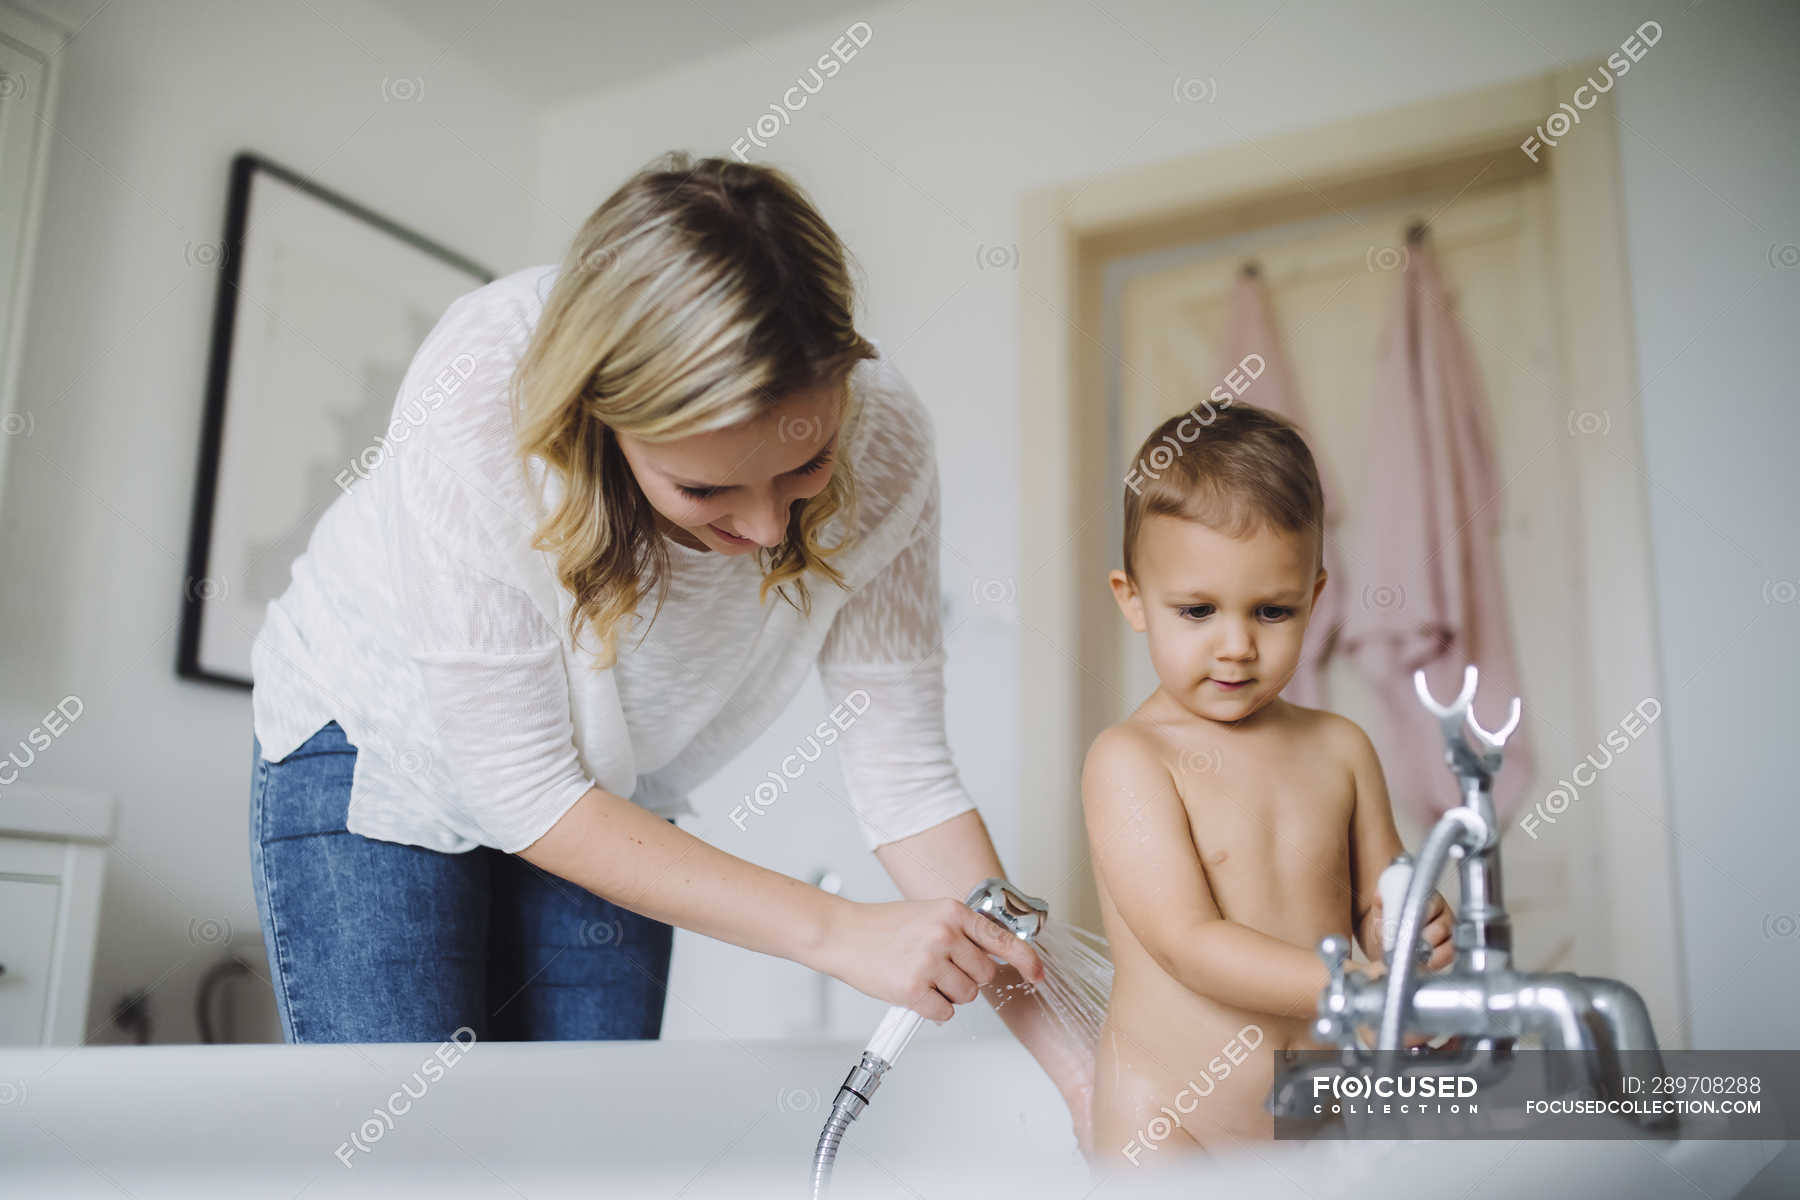 Mom son shower. Дети моются в ванной. Молодая мамочка в ванной. Моется с сыном. Мама с ребенком в ванной комнате.